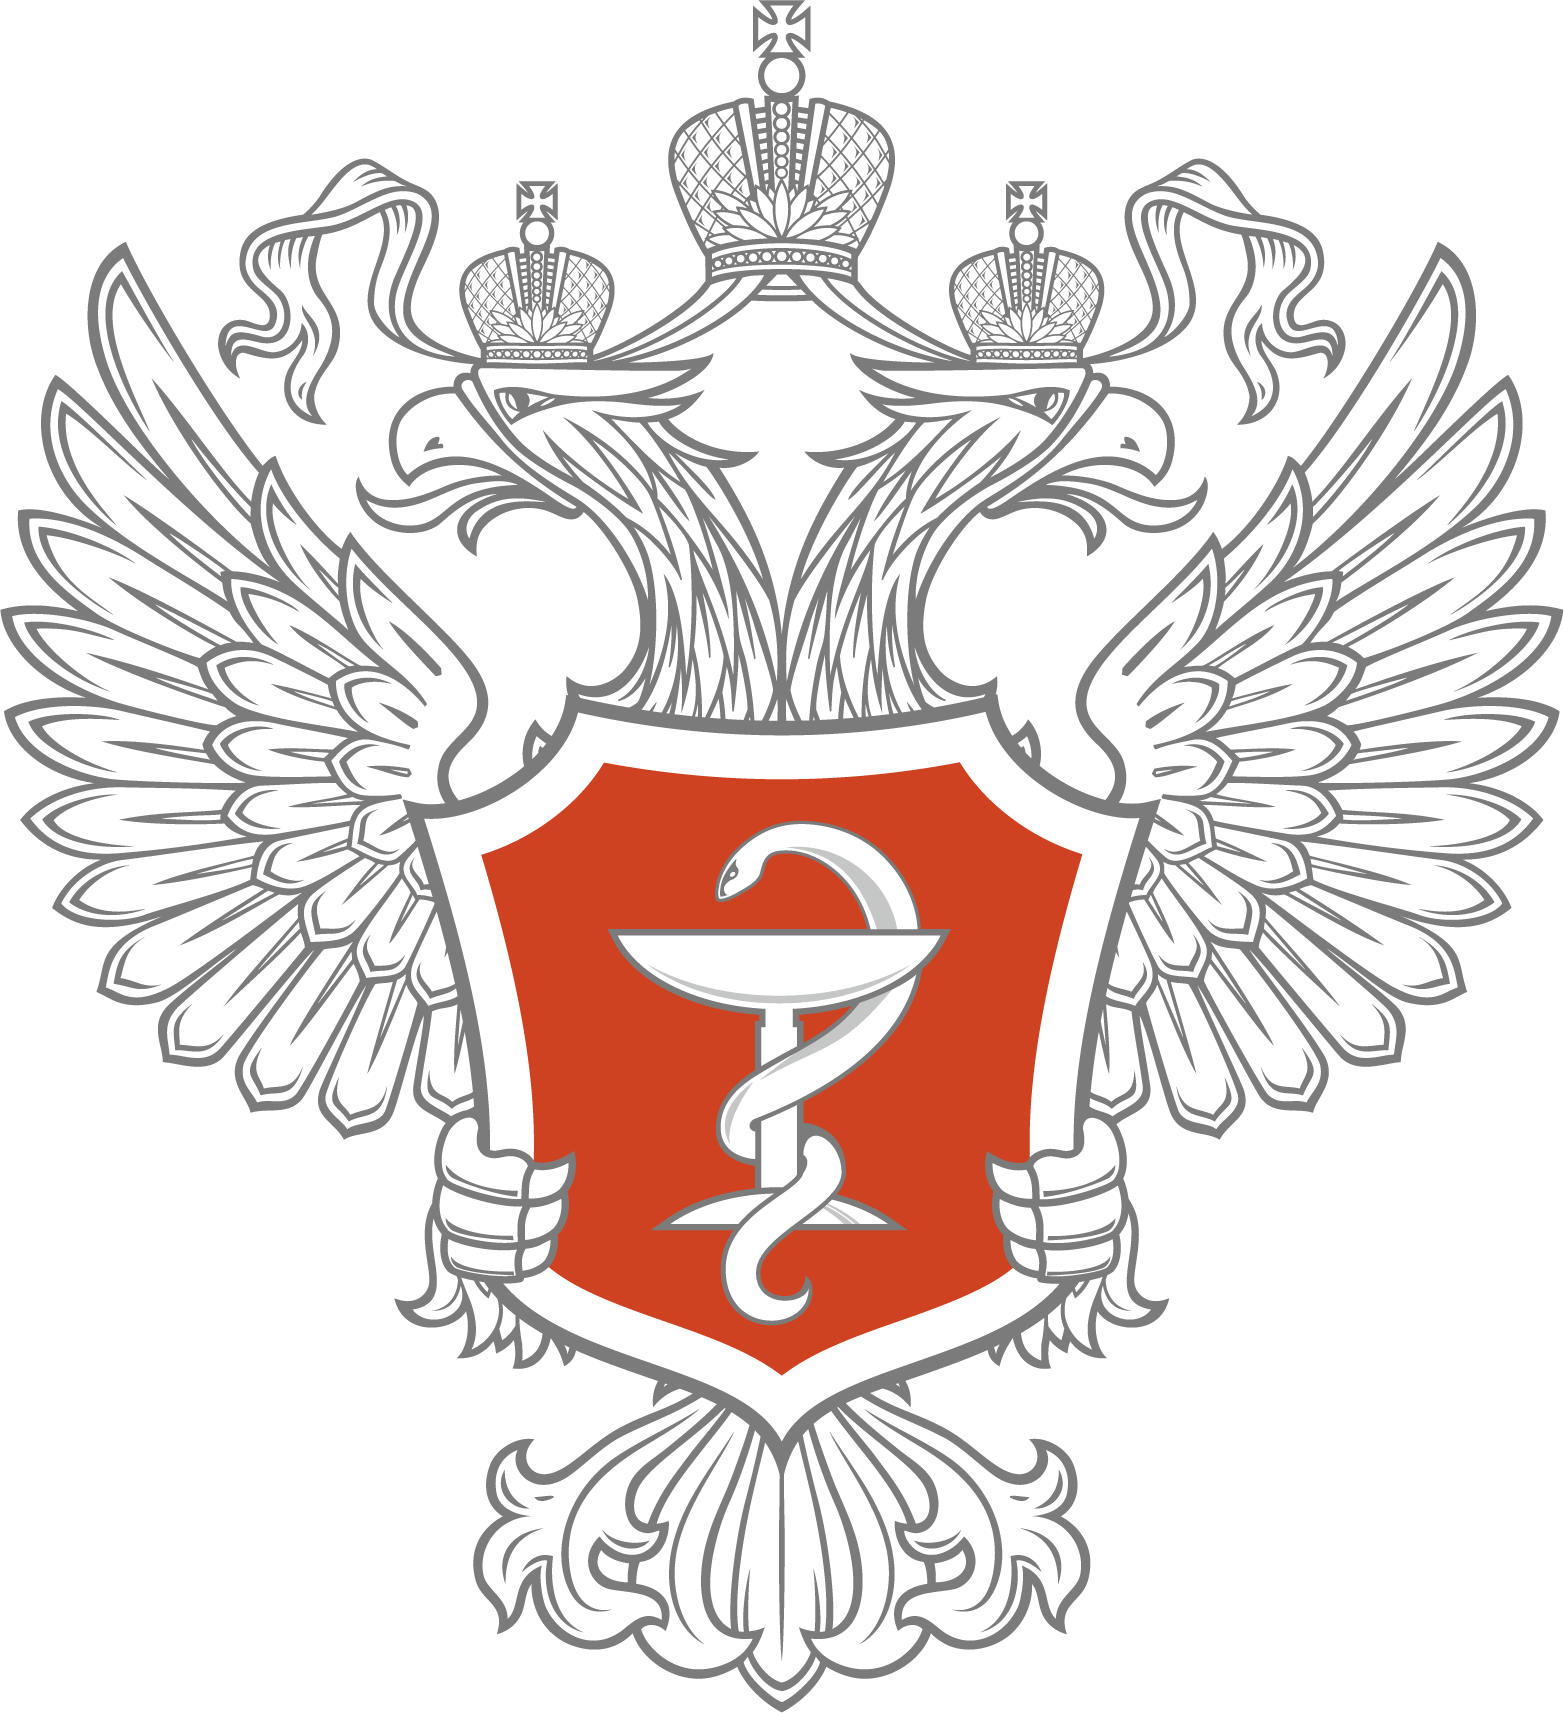 Министерство здравоохранения Российской Федерации